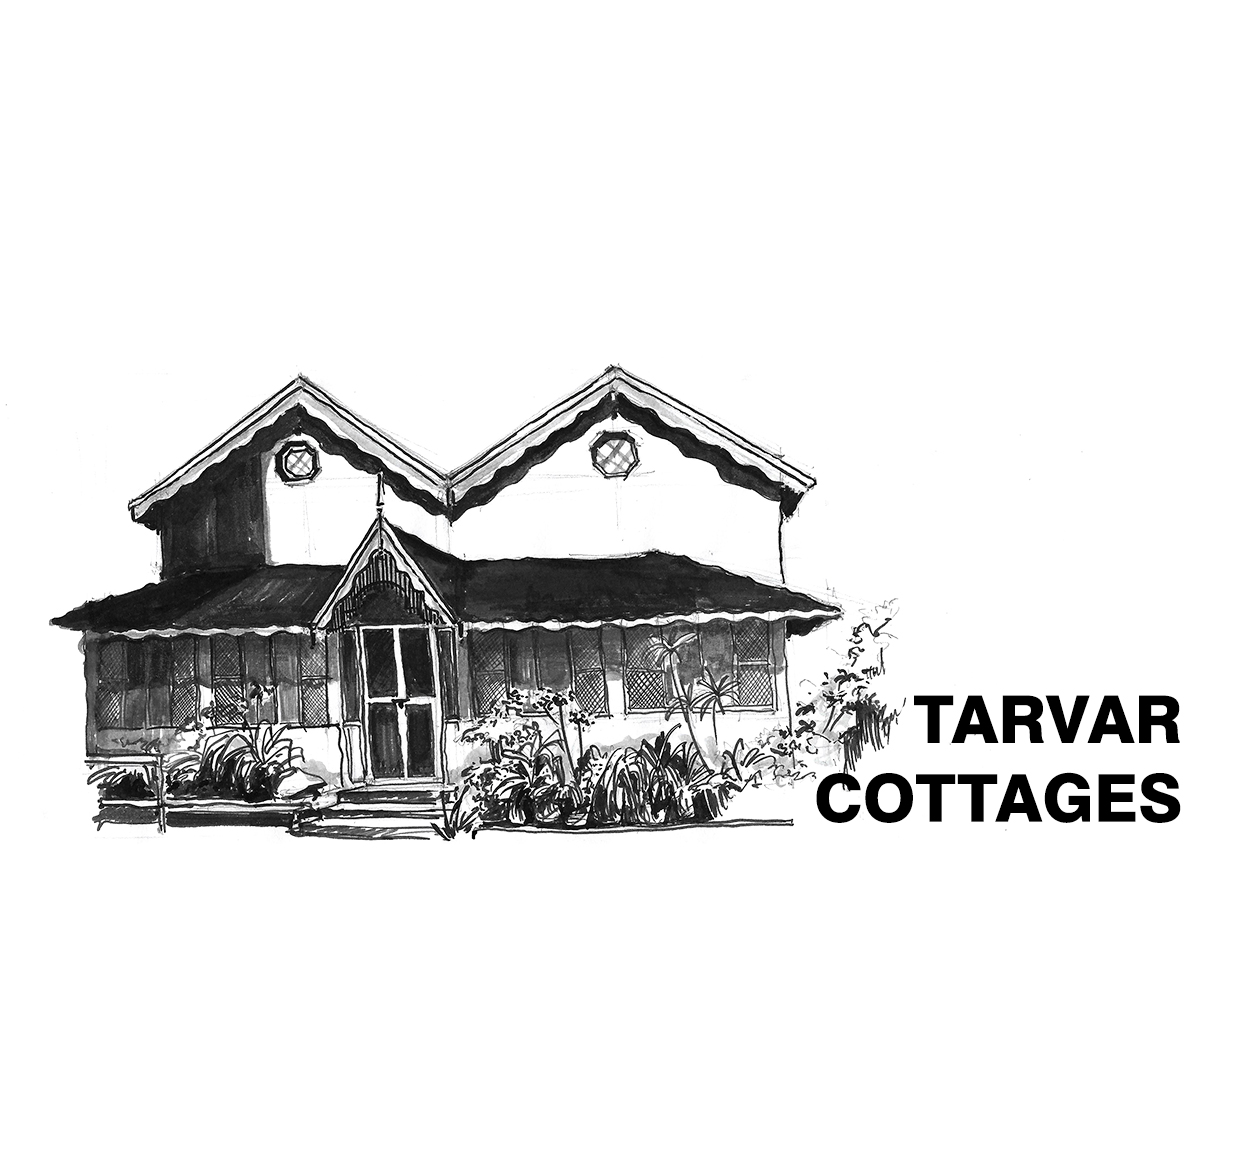 Tarvar Cottage